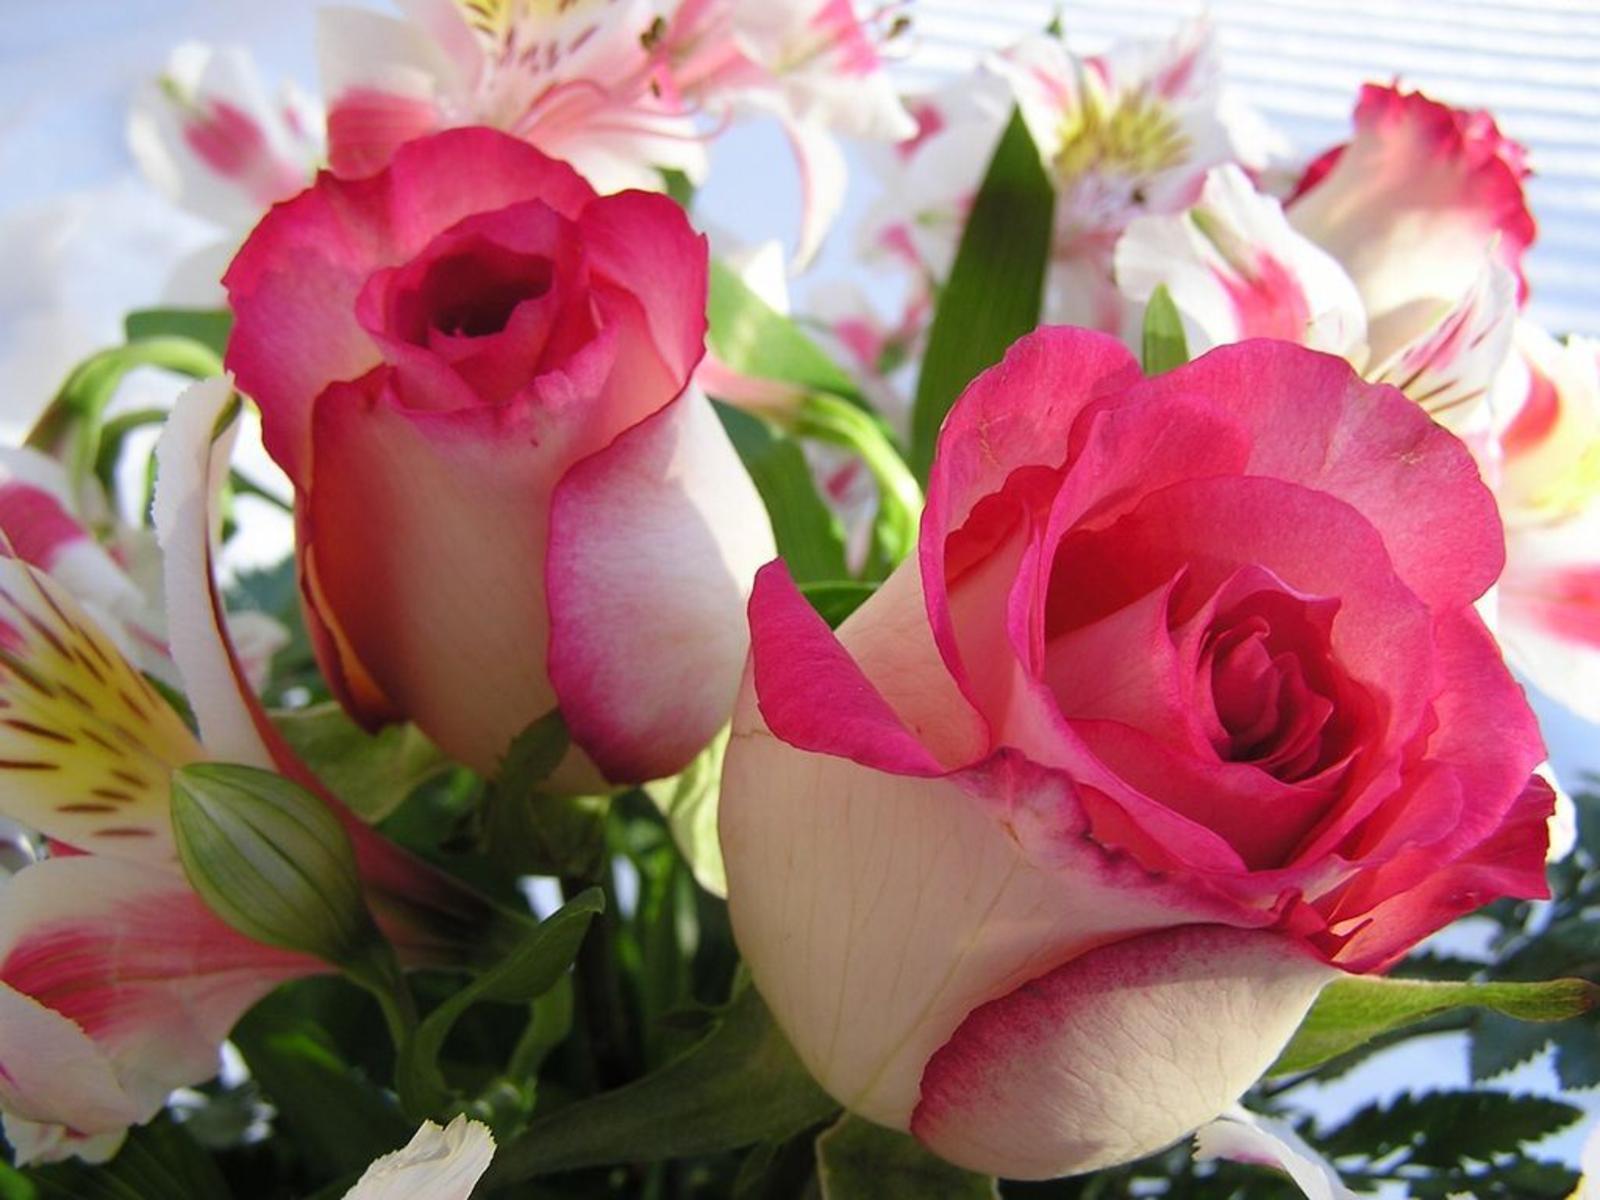 Roses Desktop Wallpaper. Roses Image Free Download